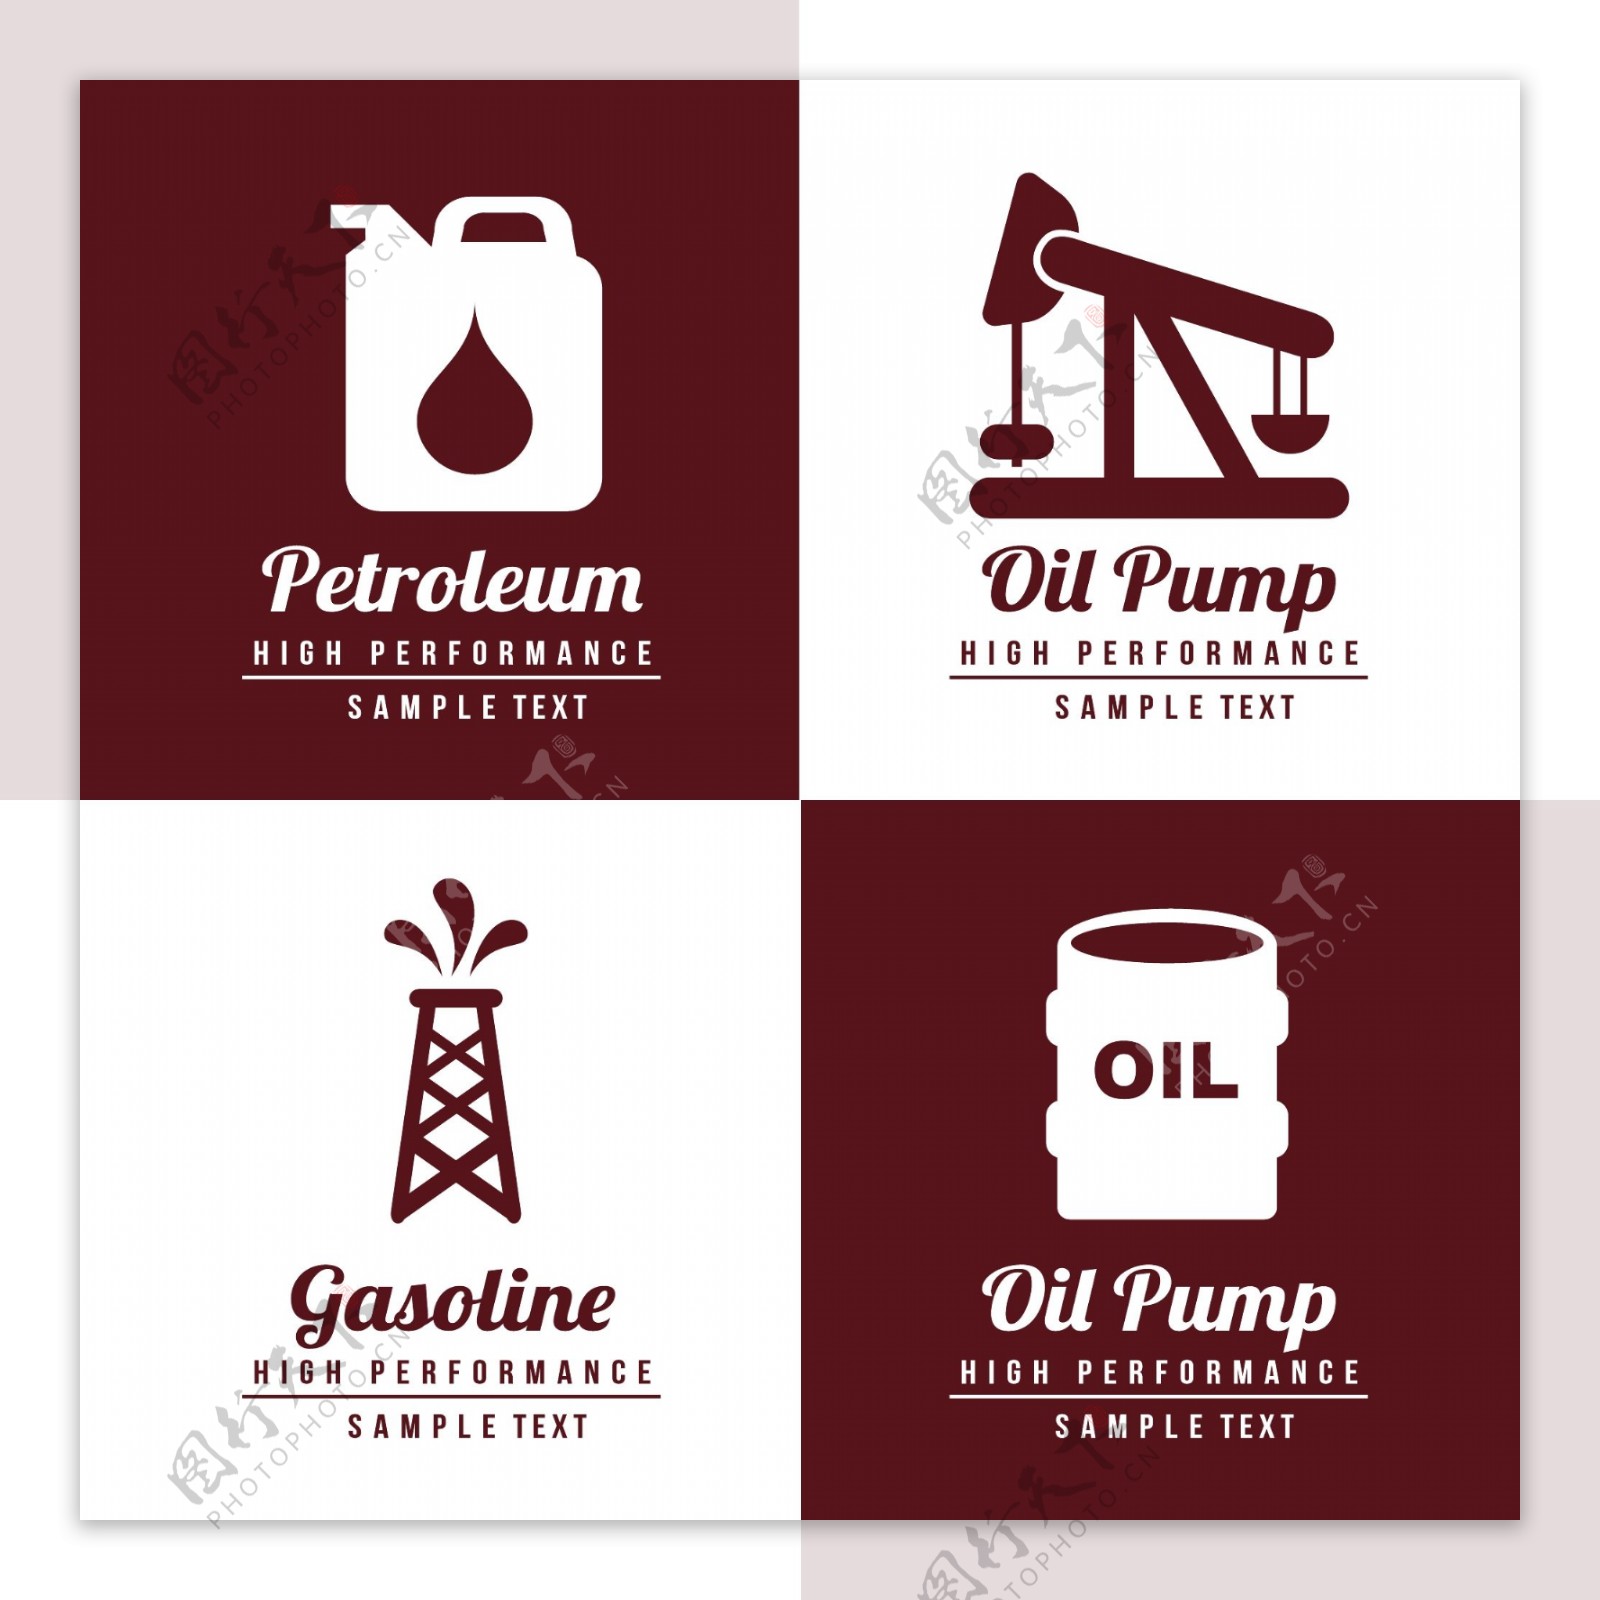 石油天然气图片